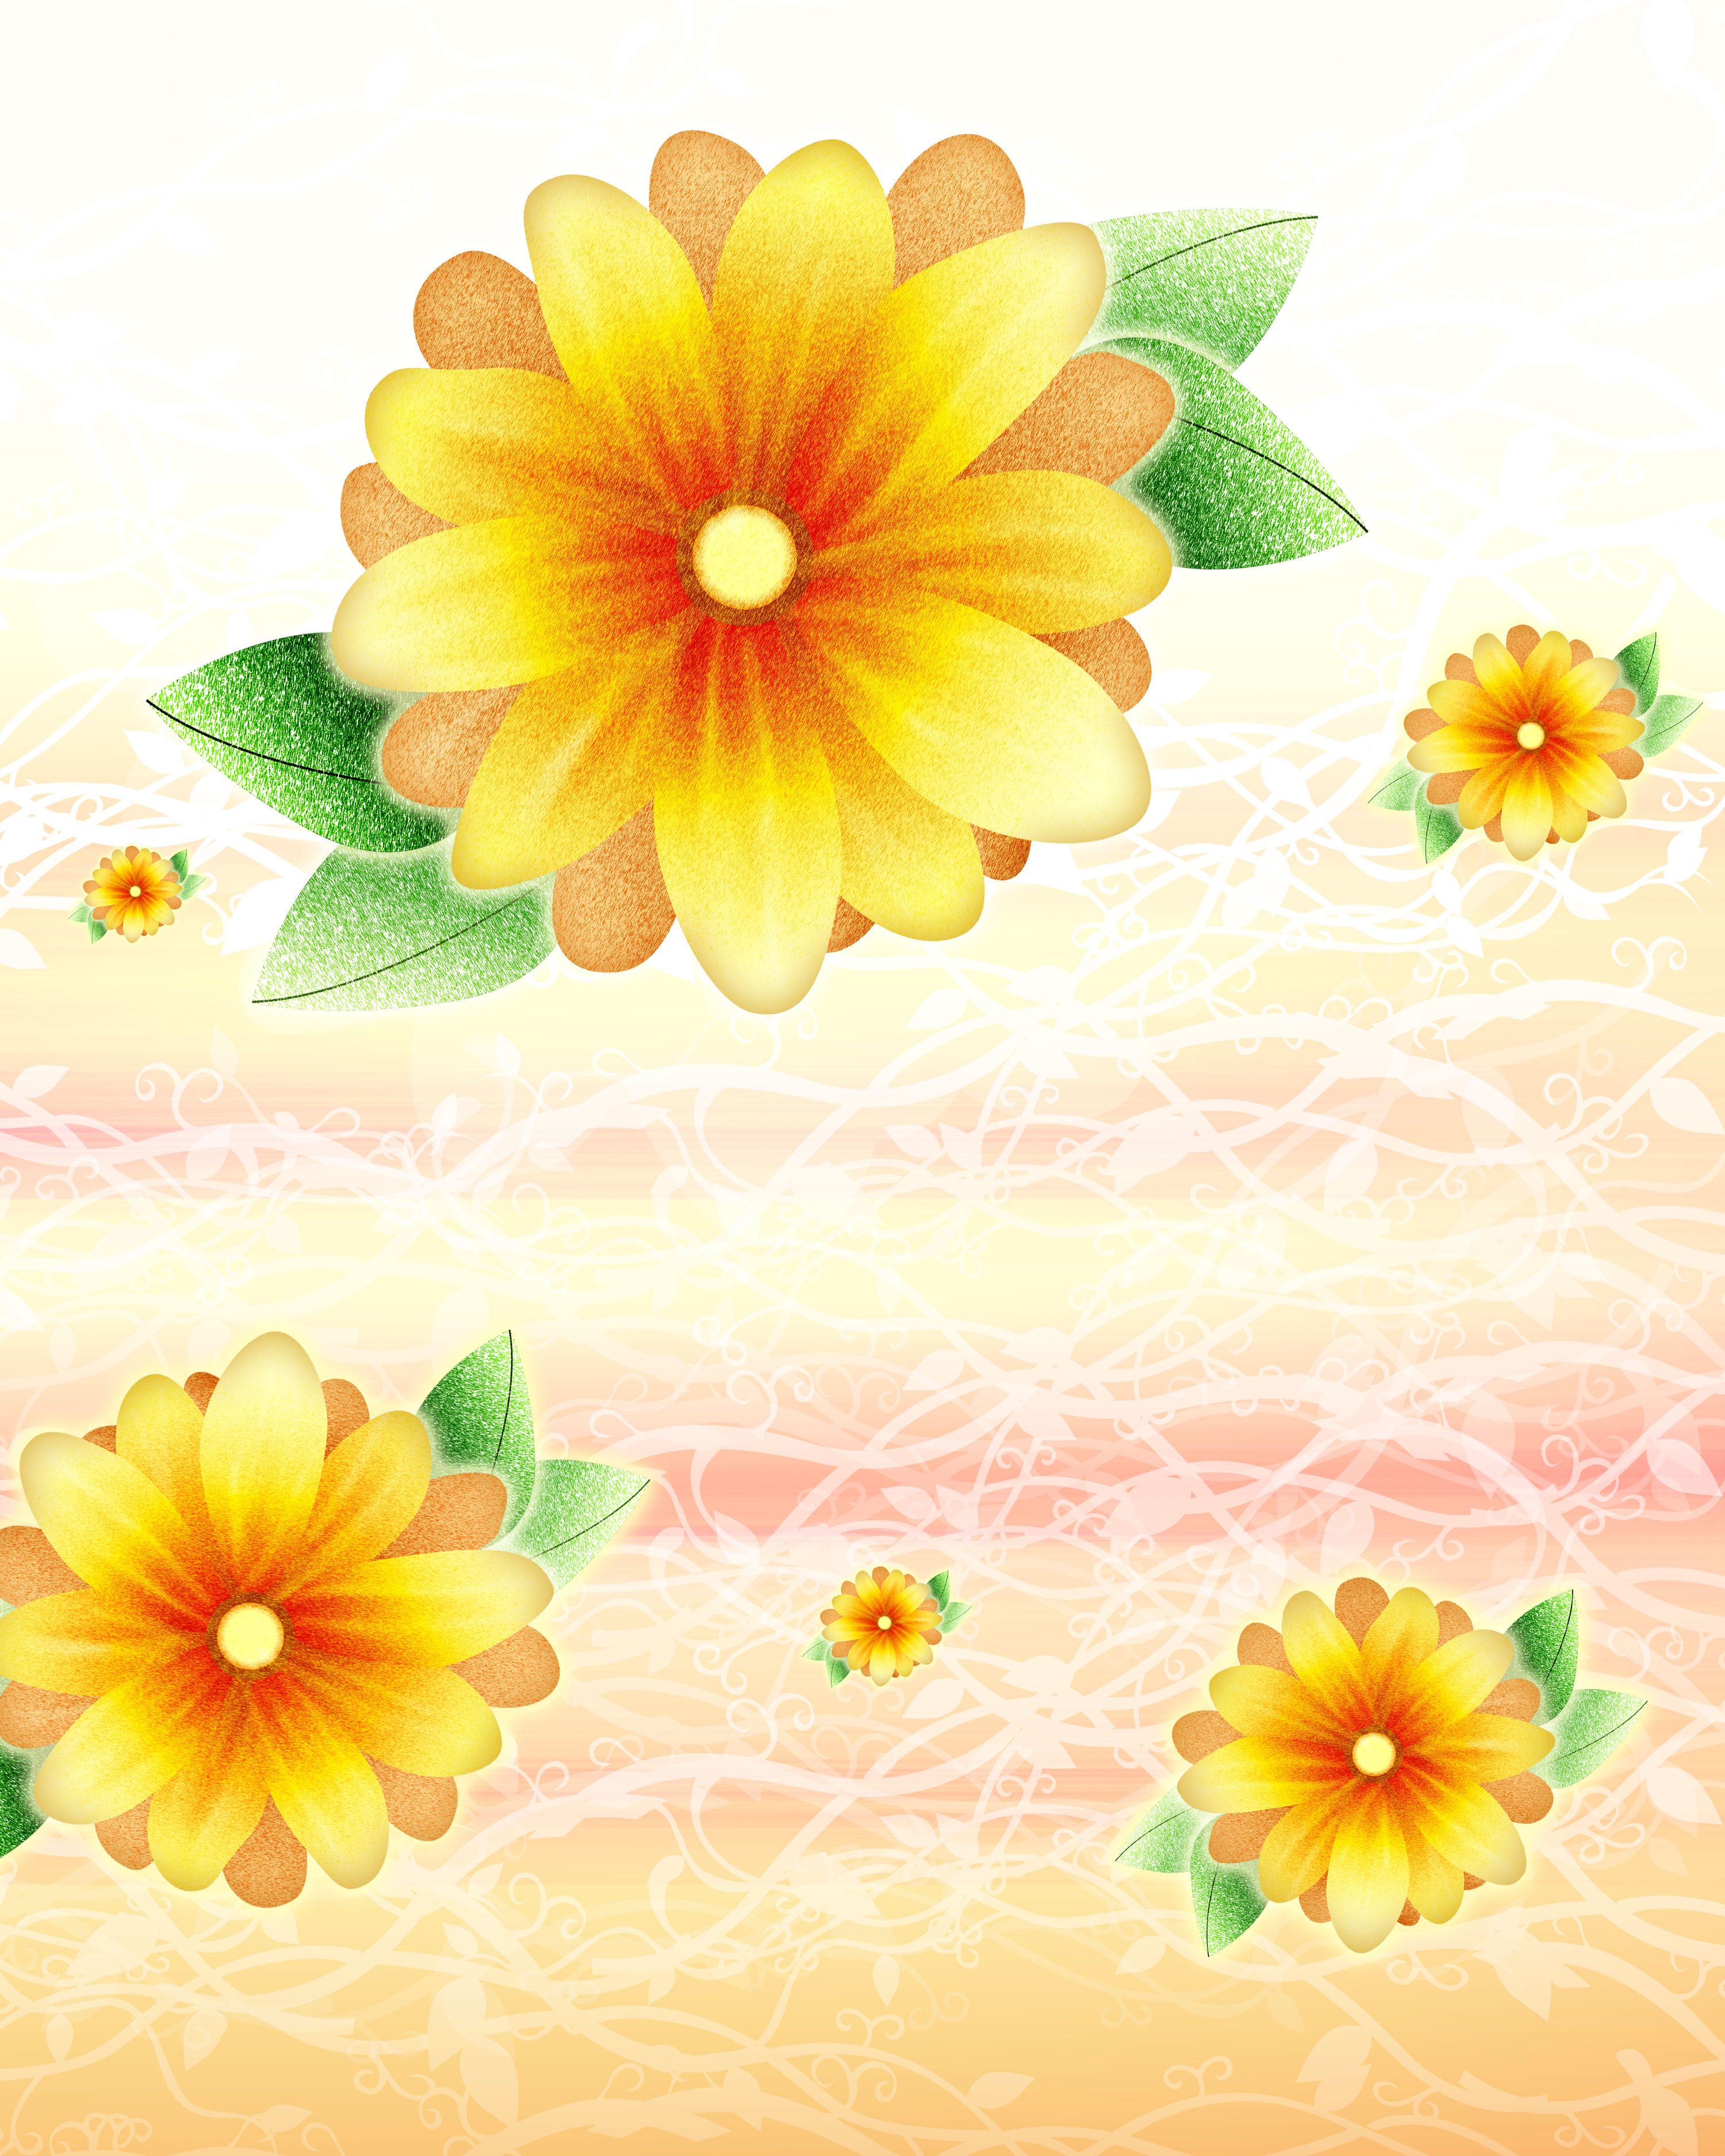 花のイラスト フリー素材 壁紙 背景no 518 細かい粒状